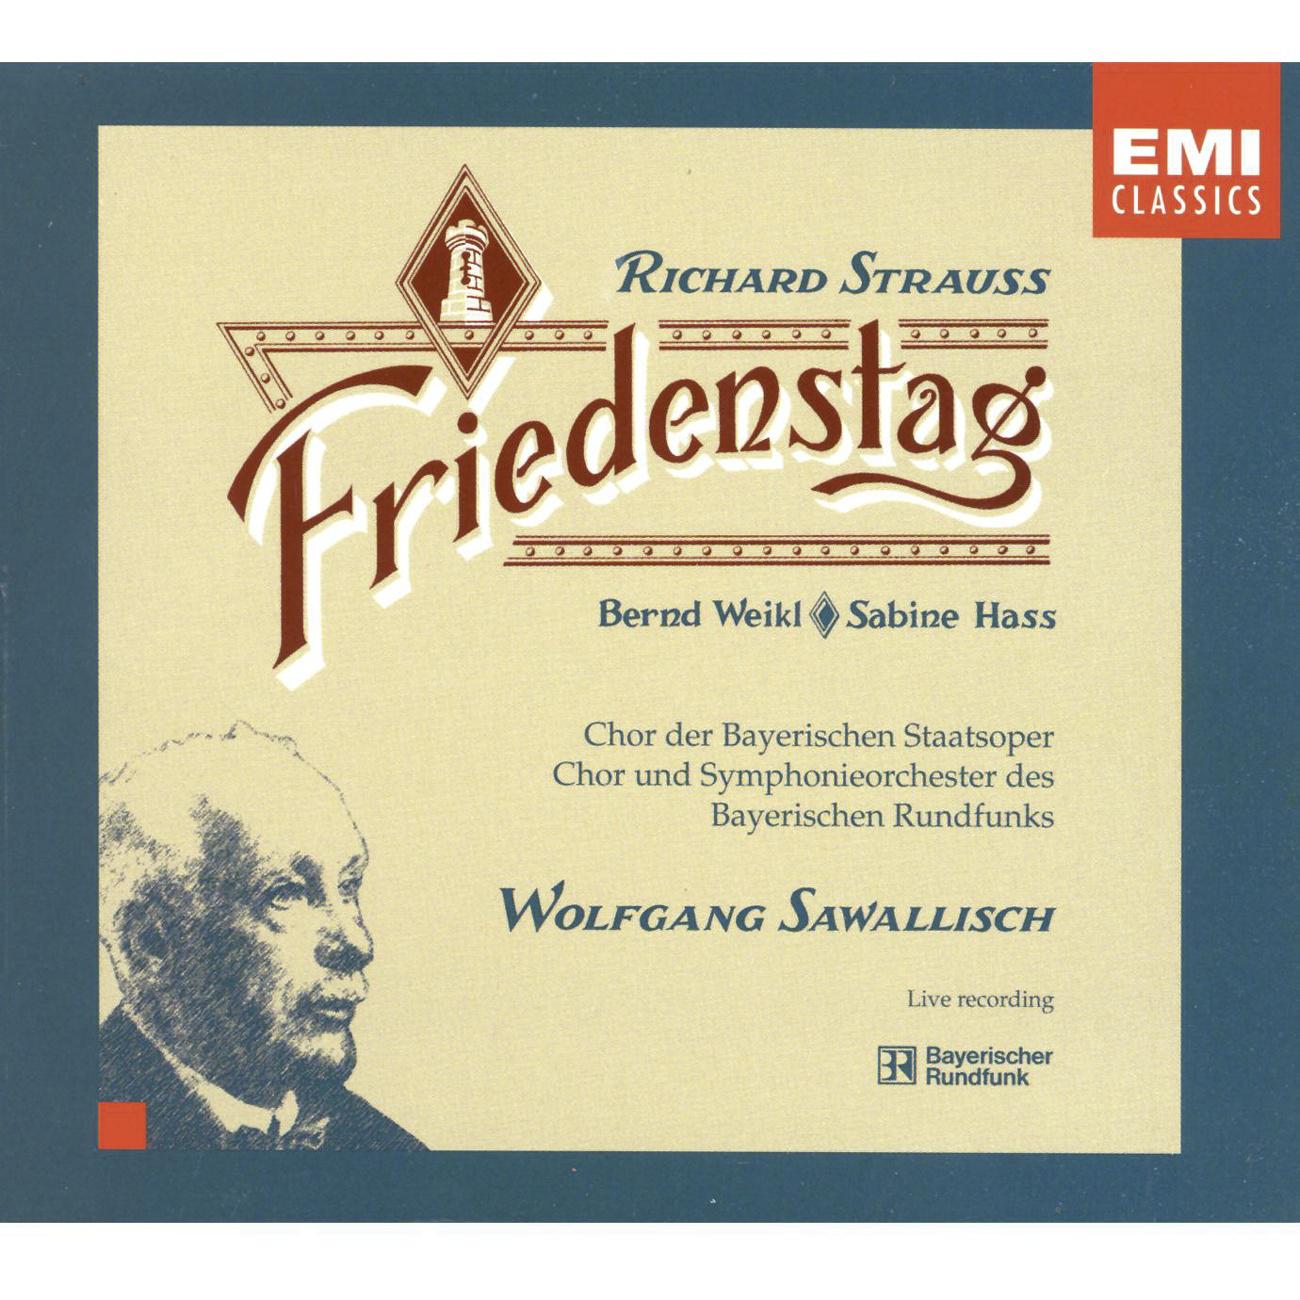 Richard Strauss: Friedenstag Op.81专辑